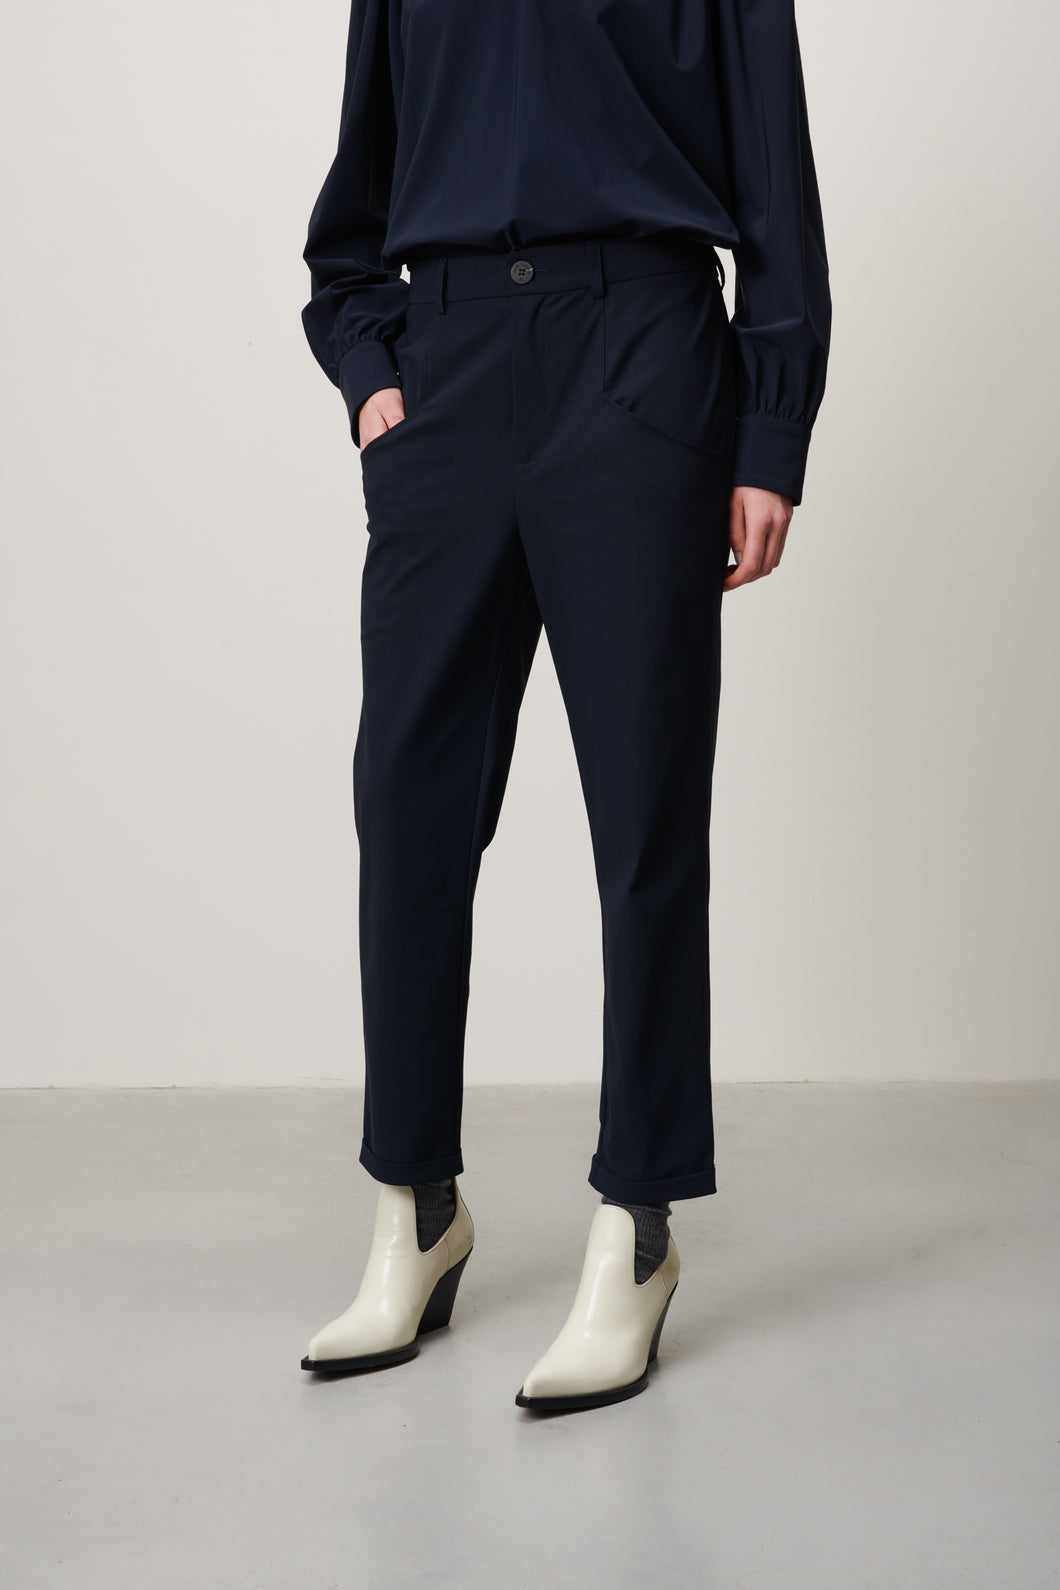 Travelkwaliteit blauwe broek, Pants Hary van Jane Lushka is een mooie lange redelijk aansluitende broek met een ritssluiting, knoop en lusjes. Broek heeft een rechte pijp met omslag, aan beide kanten zakken en is van de bekende travel kwaliteit.